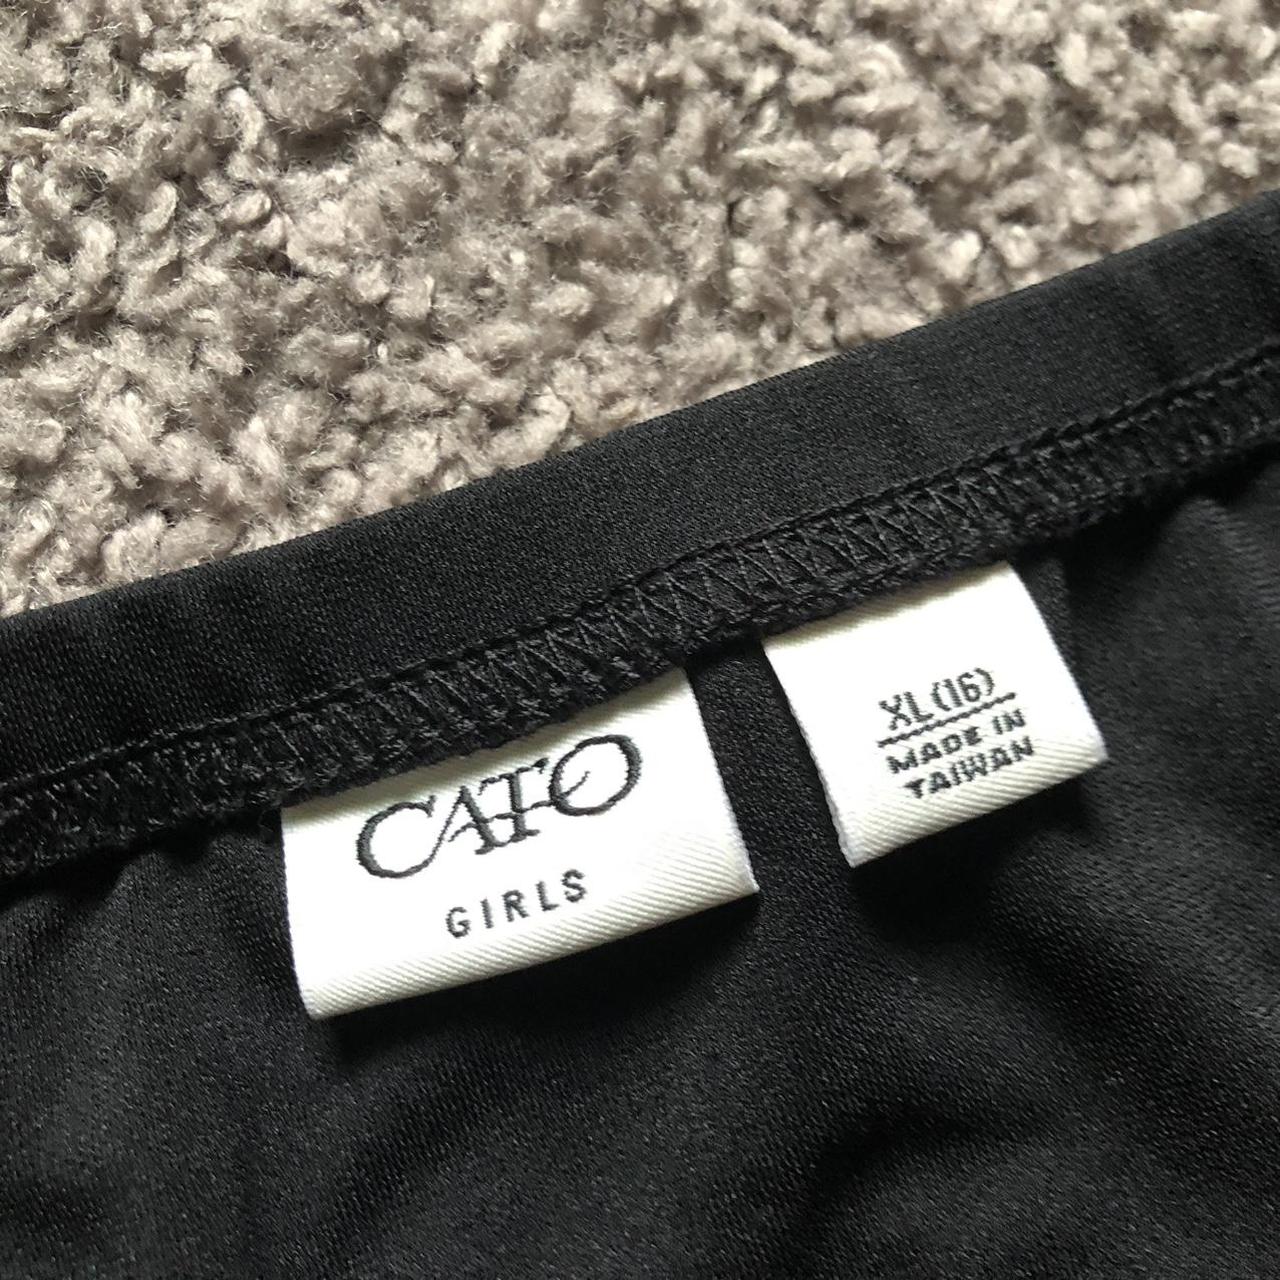 Cato Women's Black Skirt (2)